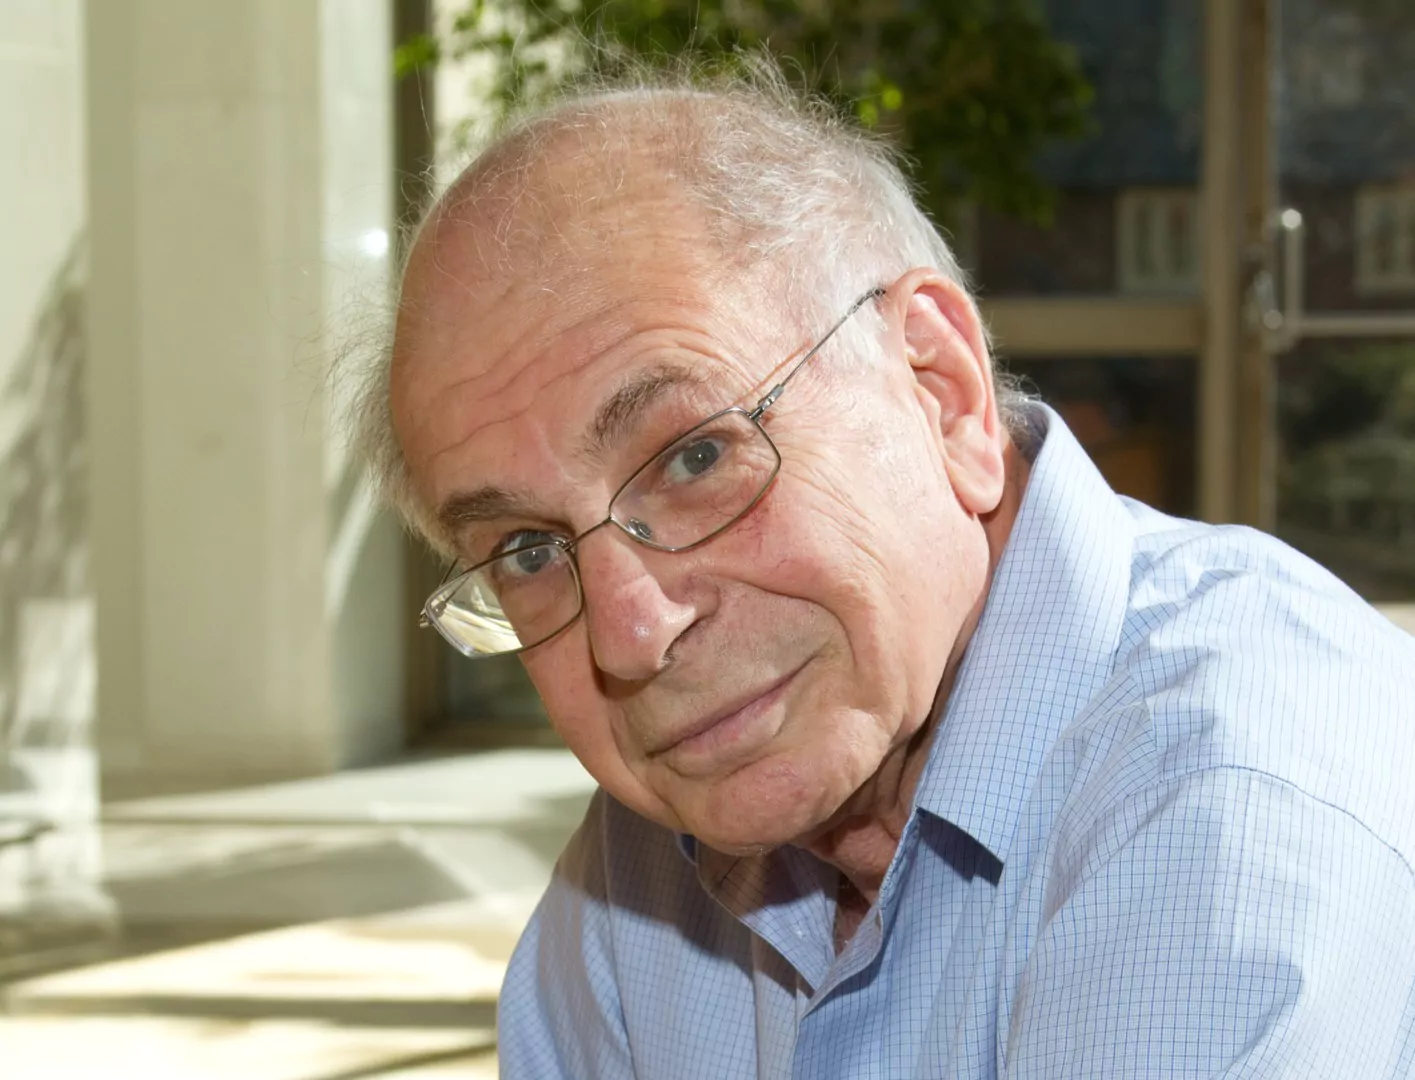 Daniel Kahneman